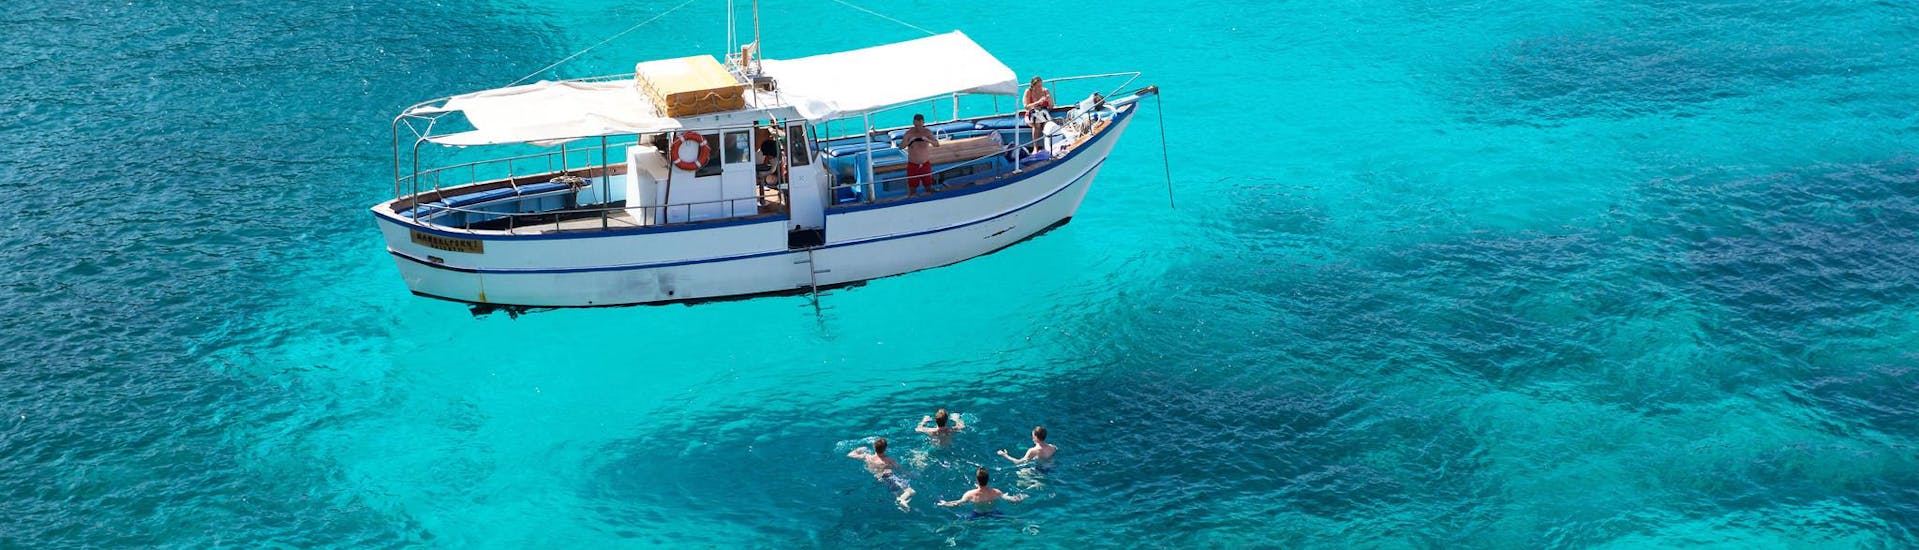 Des personnes s'amusent lors d'une excursion en bateau avec des arrêts de baignade.